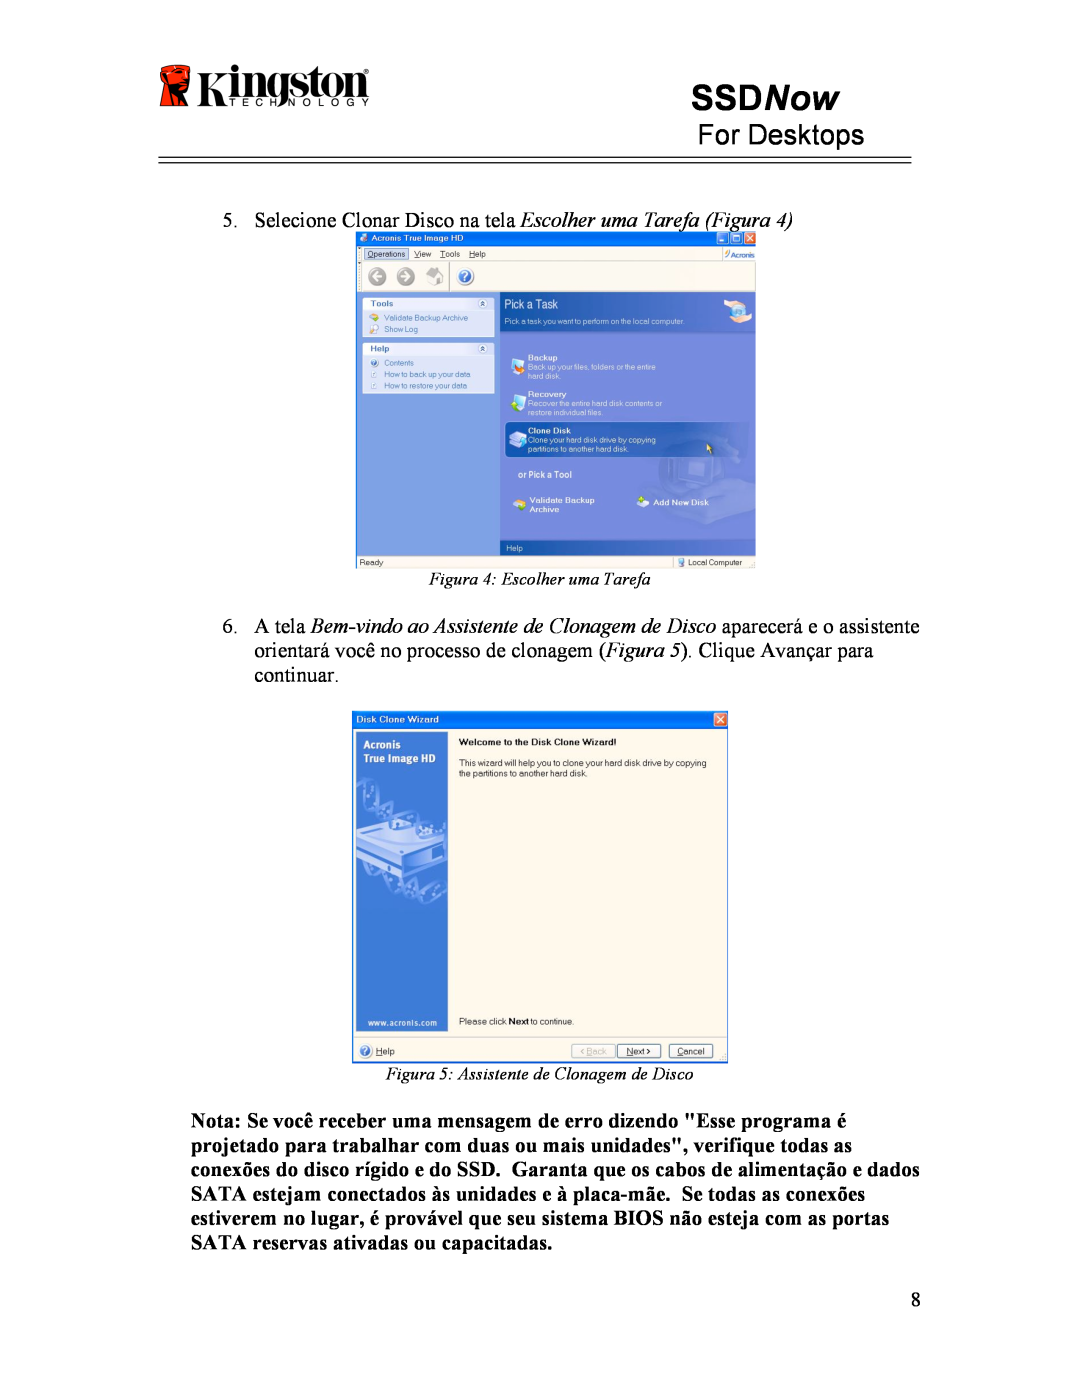 Kingston Technology 07-16-2009 manual SSDNow, For Desktops, Selecione Clonar Disco na tela Escolher uma Tarefa Figura 